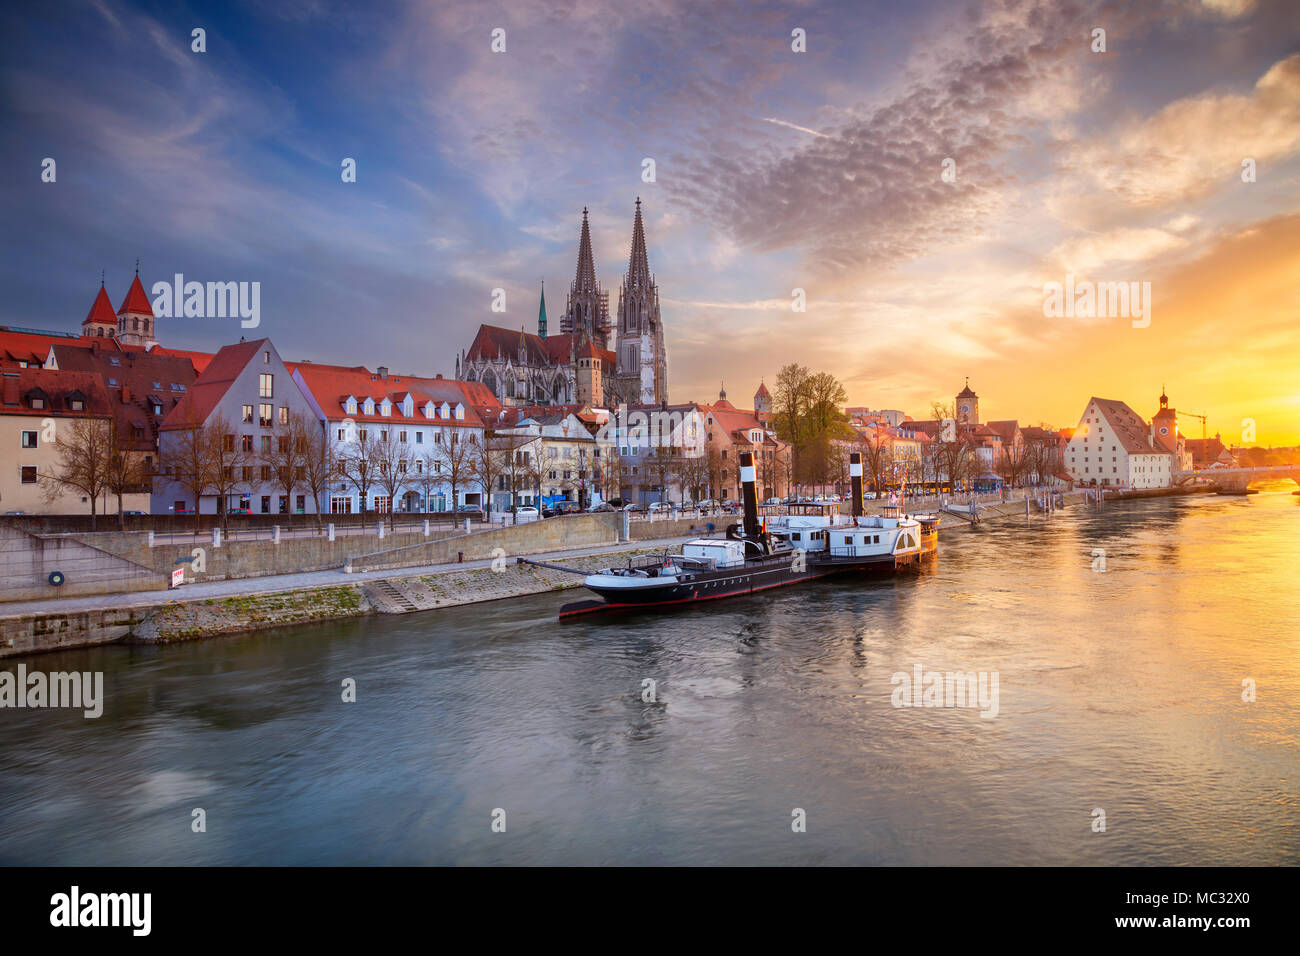 Regensburg. Stadtbild Bild von Regensburg, Deutschland im Frühjahr Sonnenuntergang. Stockfoto